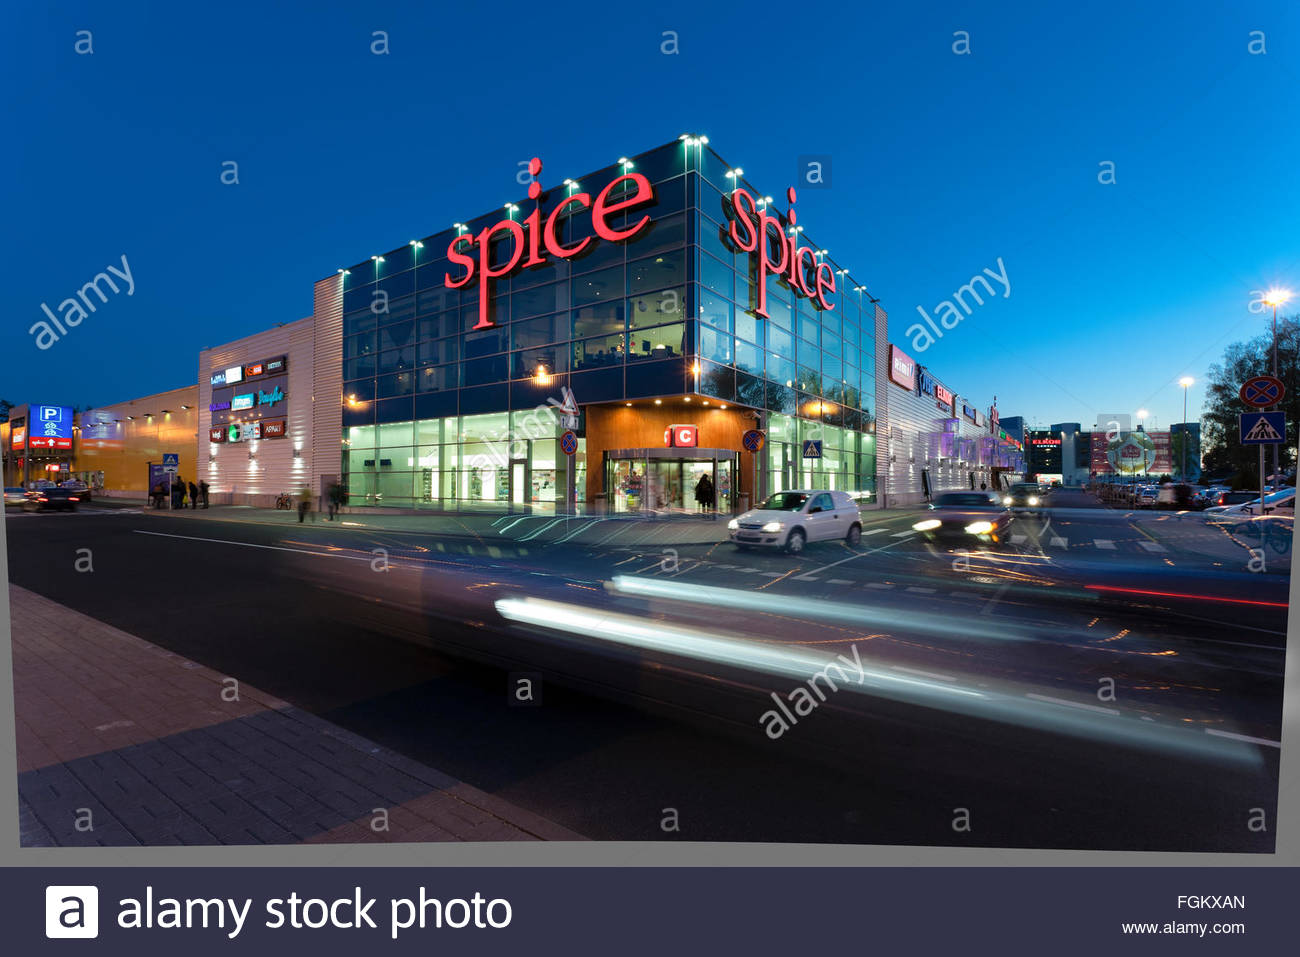 Shopping mall Spice in Riga, Latvia Stock Photo - Alamy